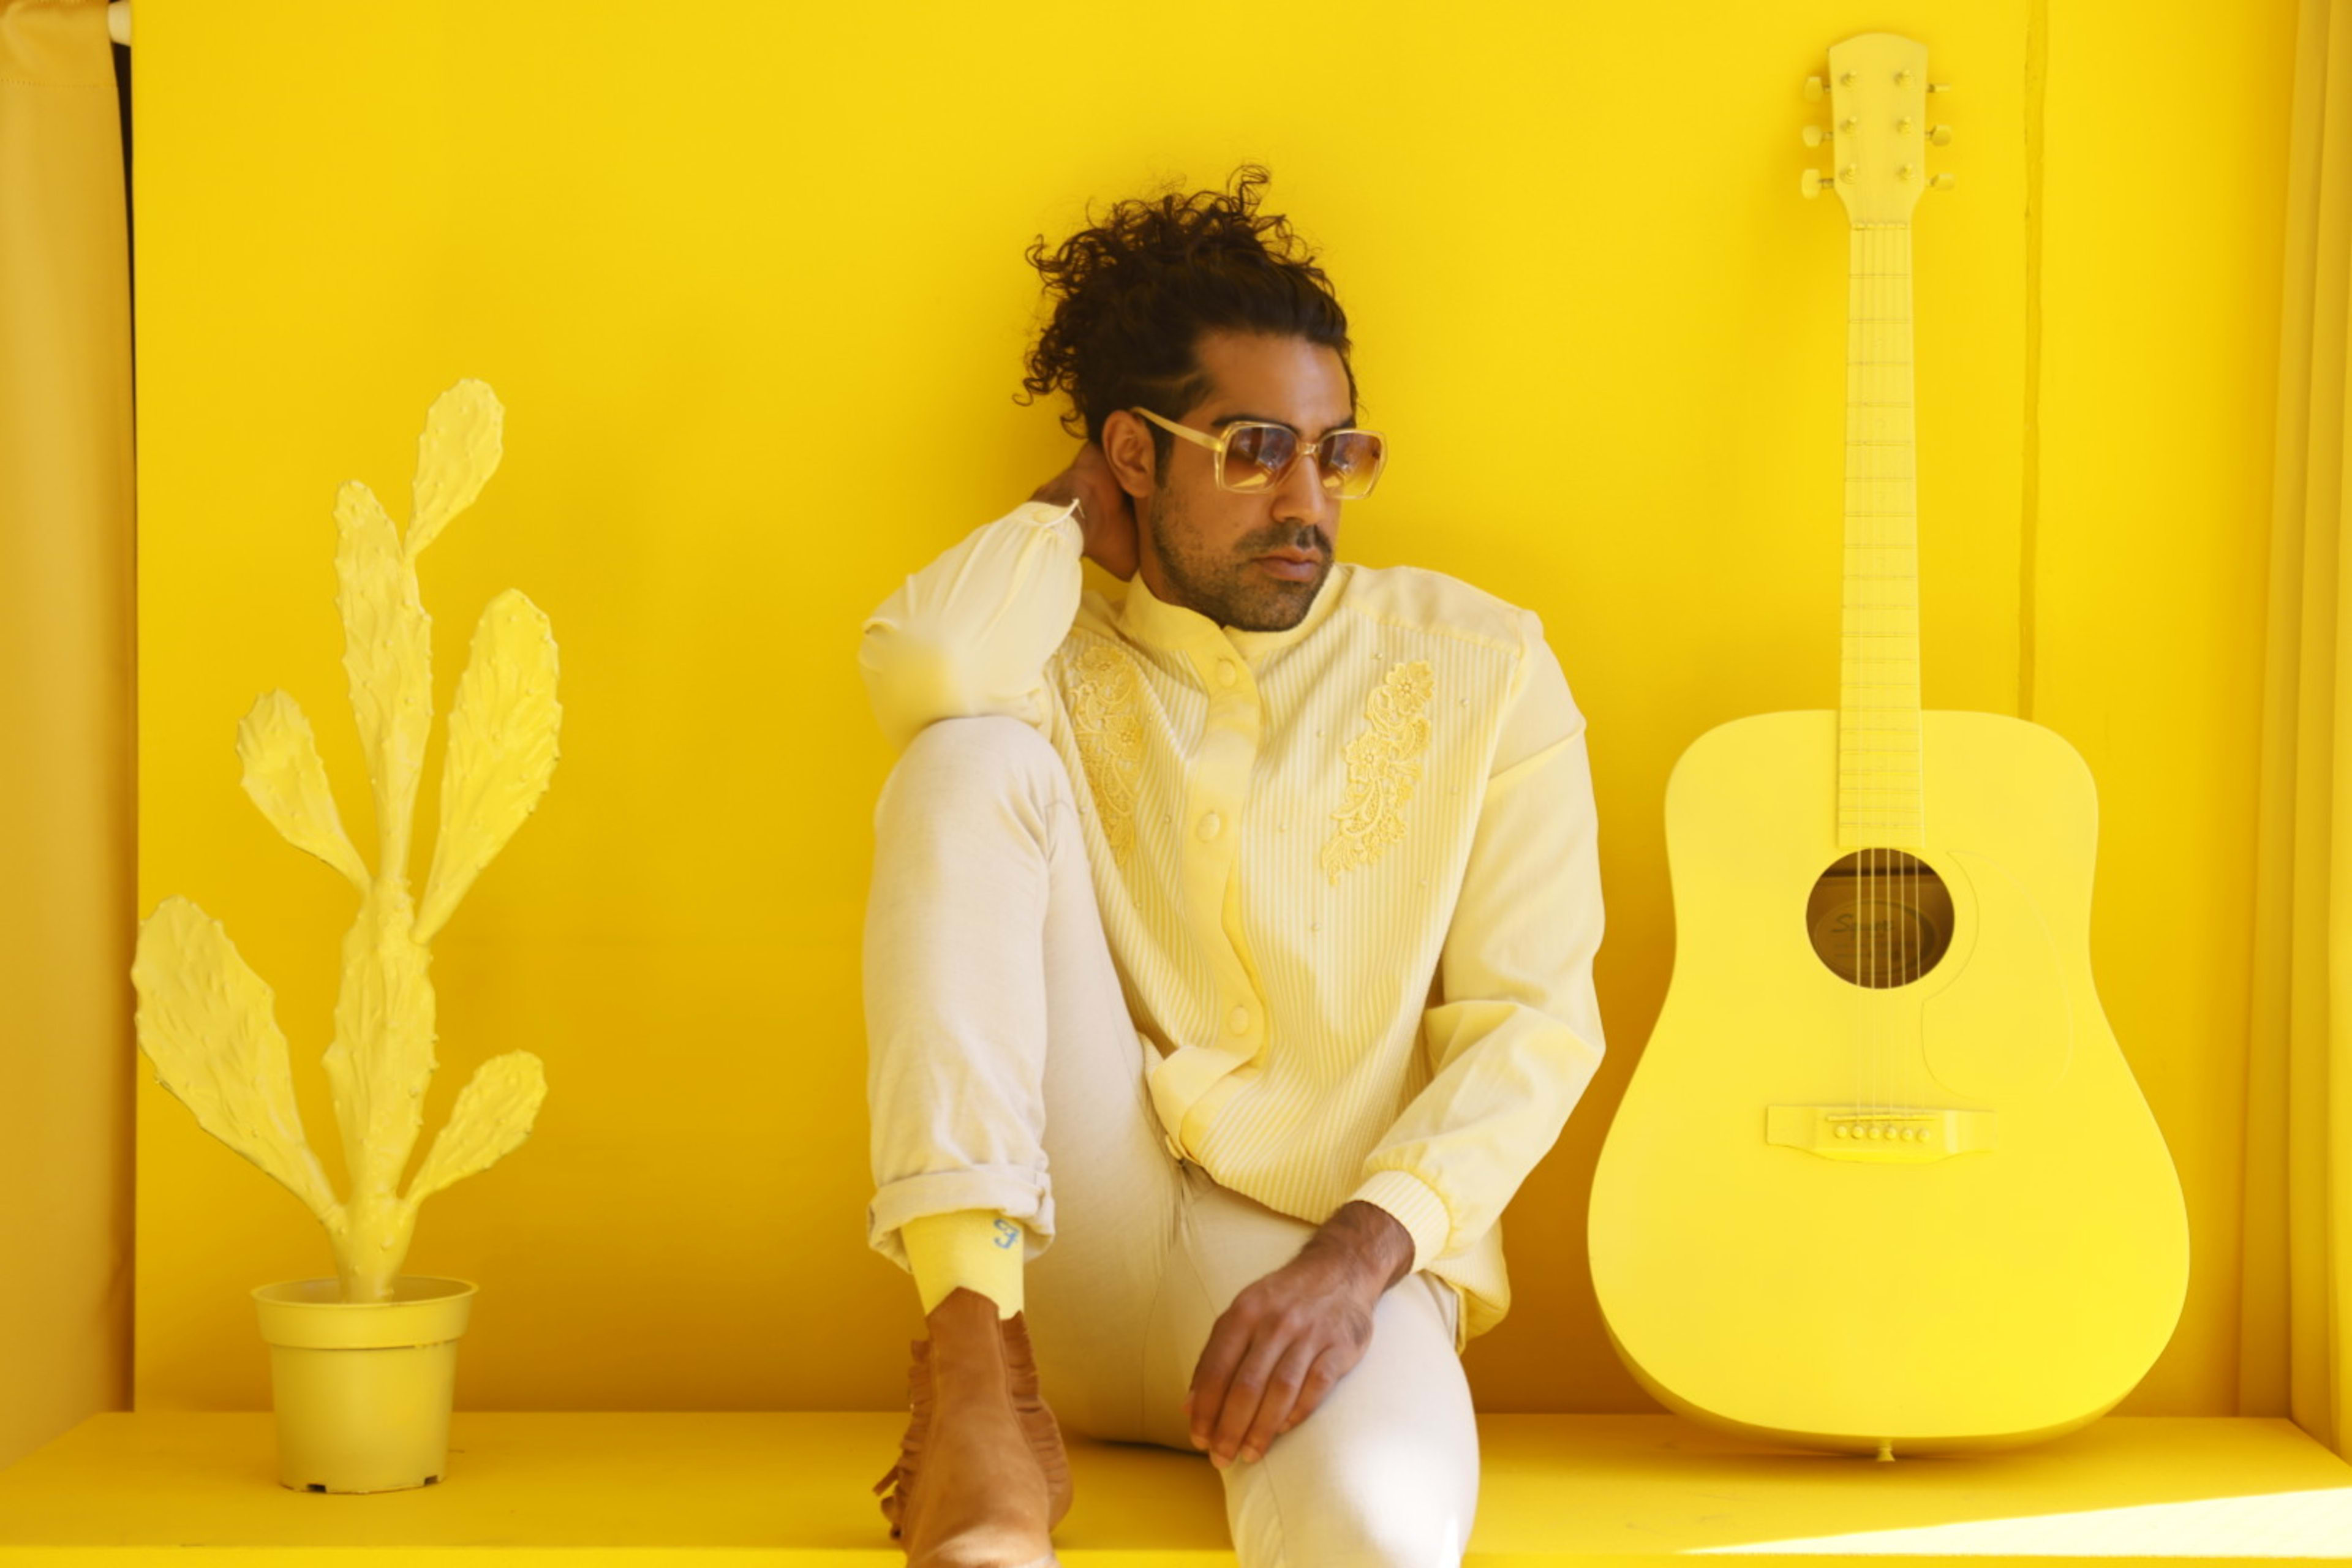 Un shooting photo rétro mettant en scène un homme assis sur une étagère jaune et tenant une guitare.